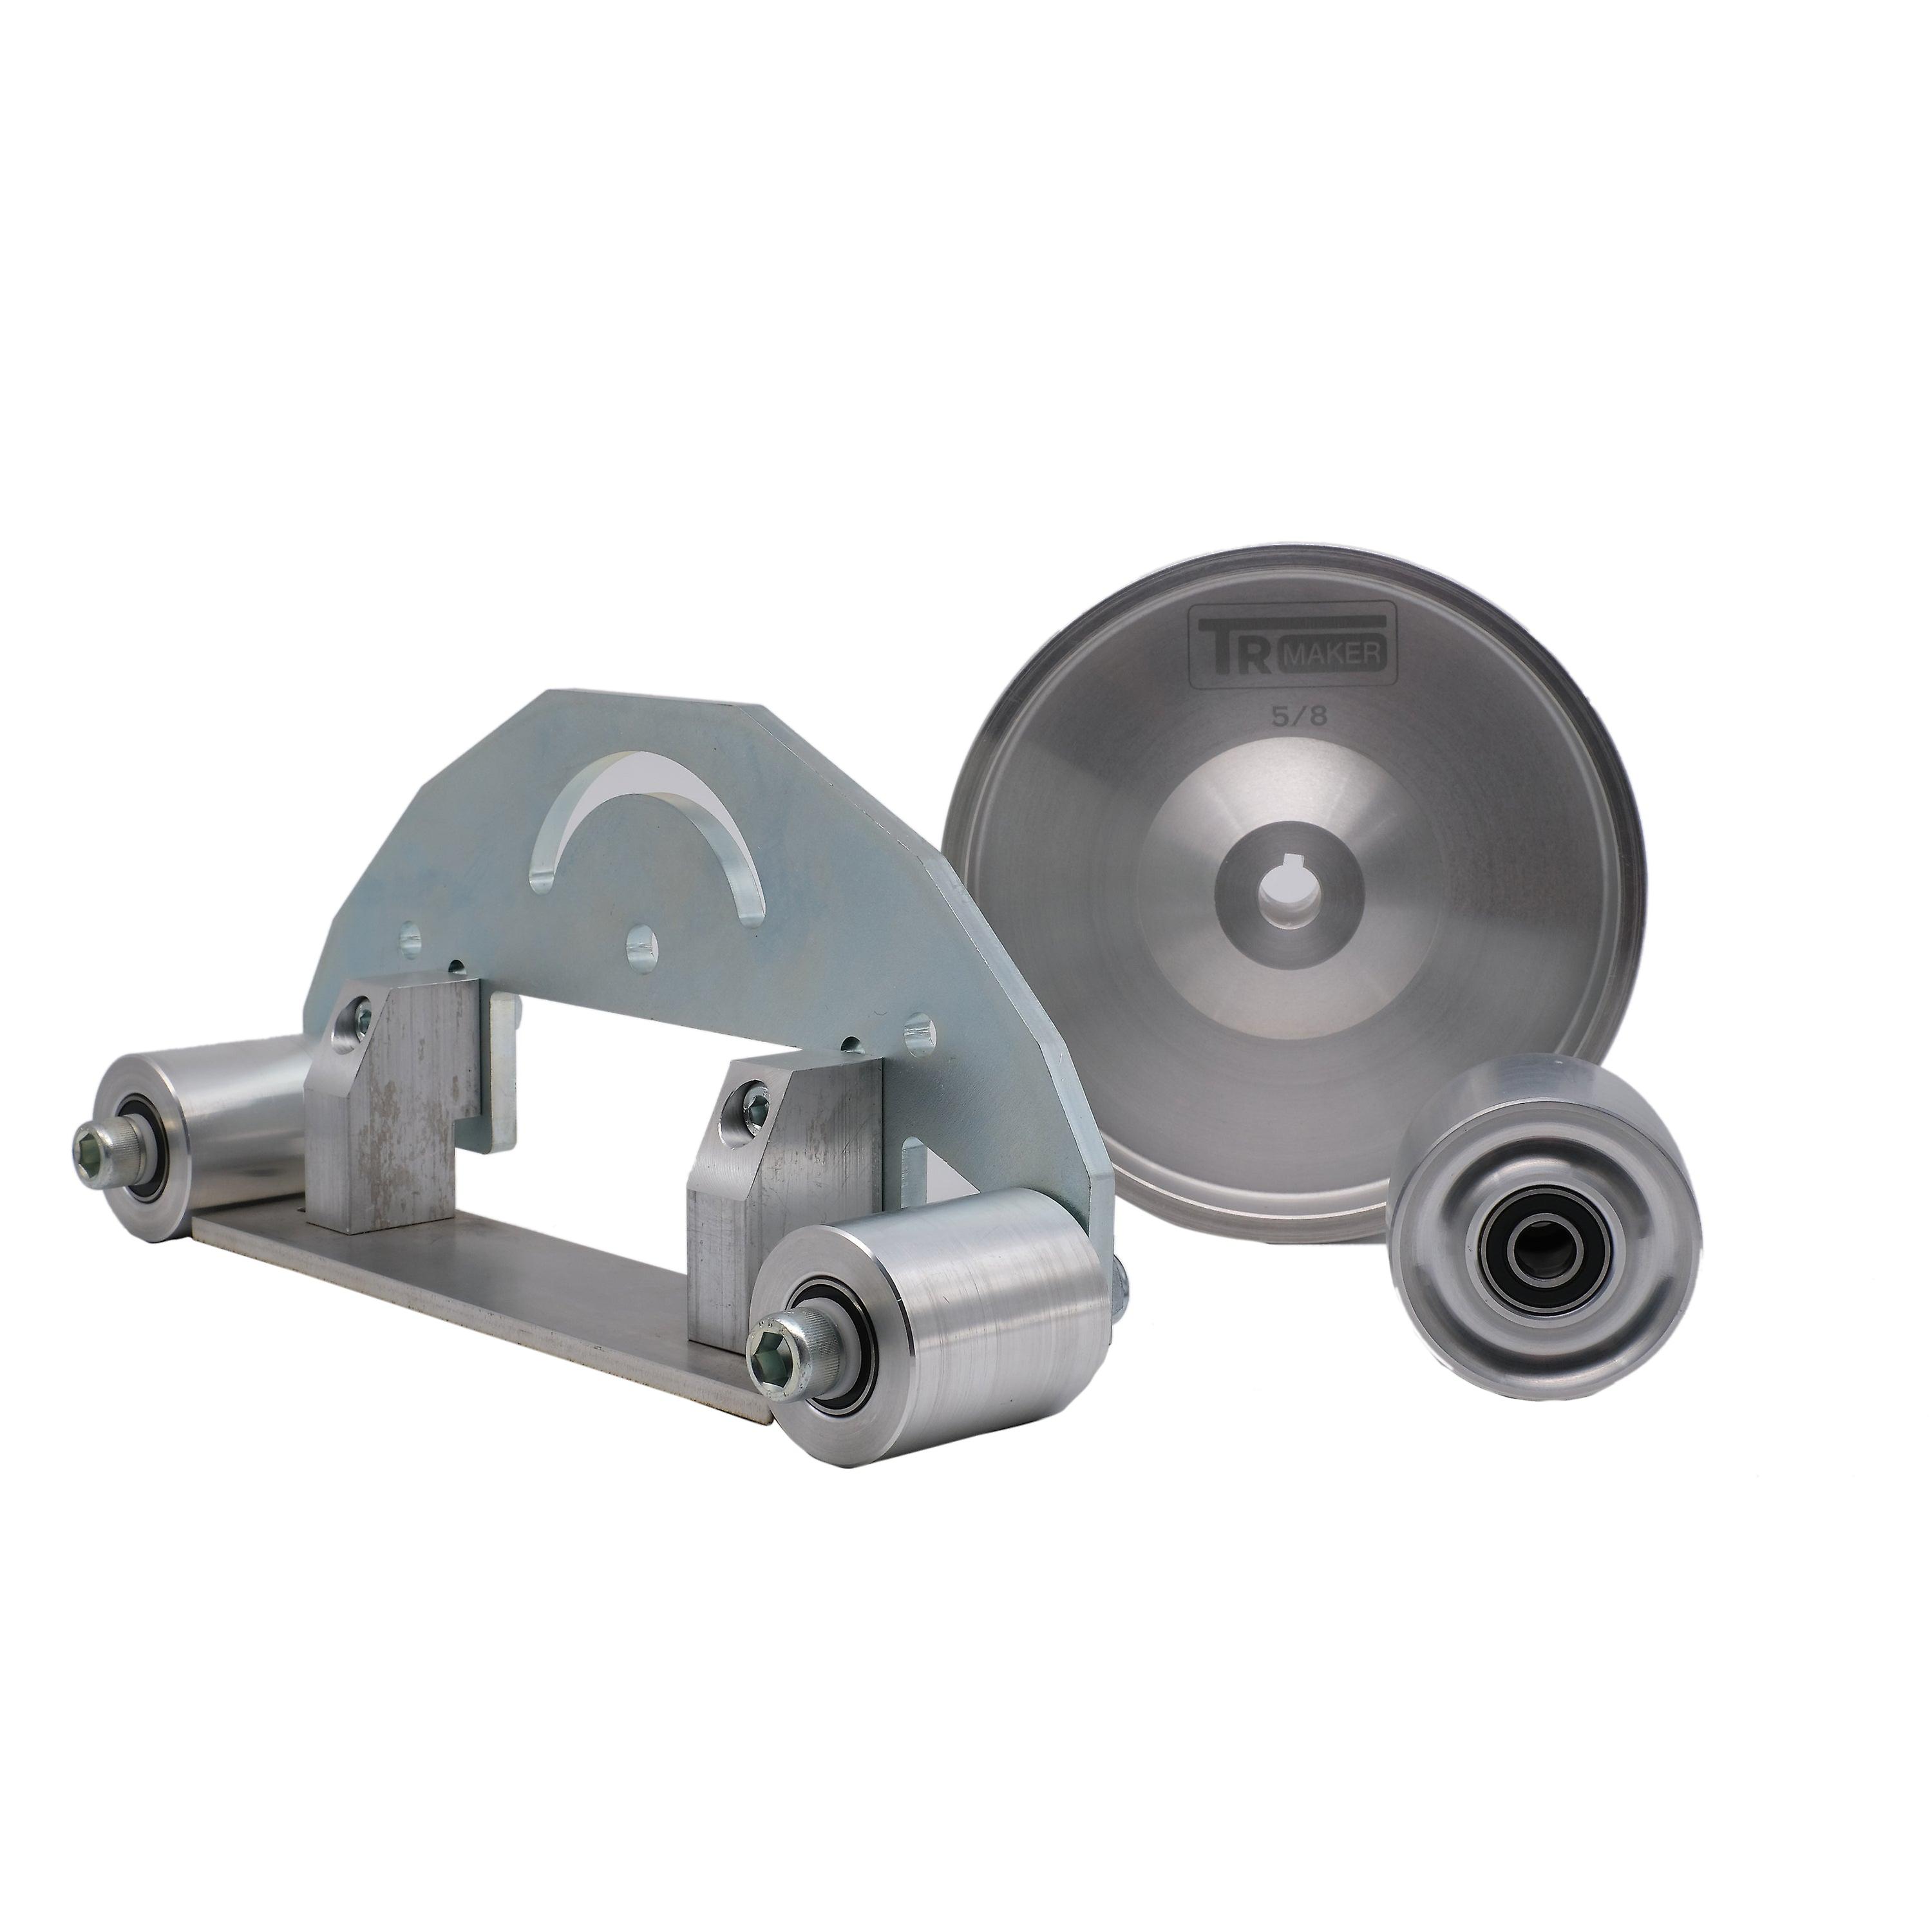 Tr maker belt grinder d-backing plate for 2x72 7 drive 3 tracking wheel kit